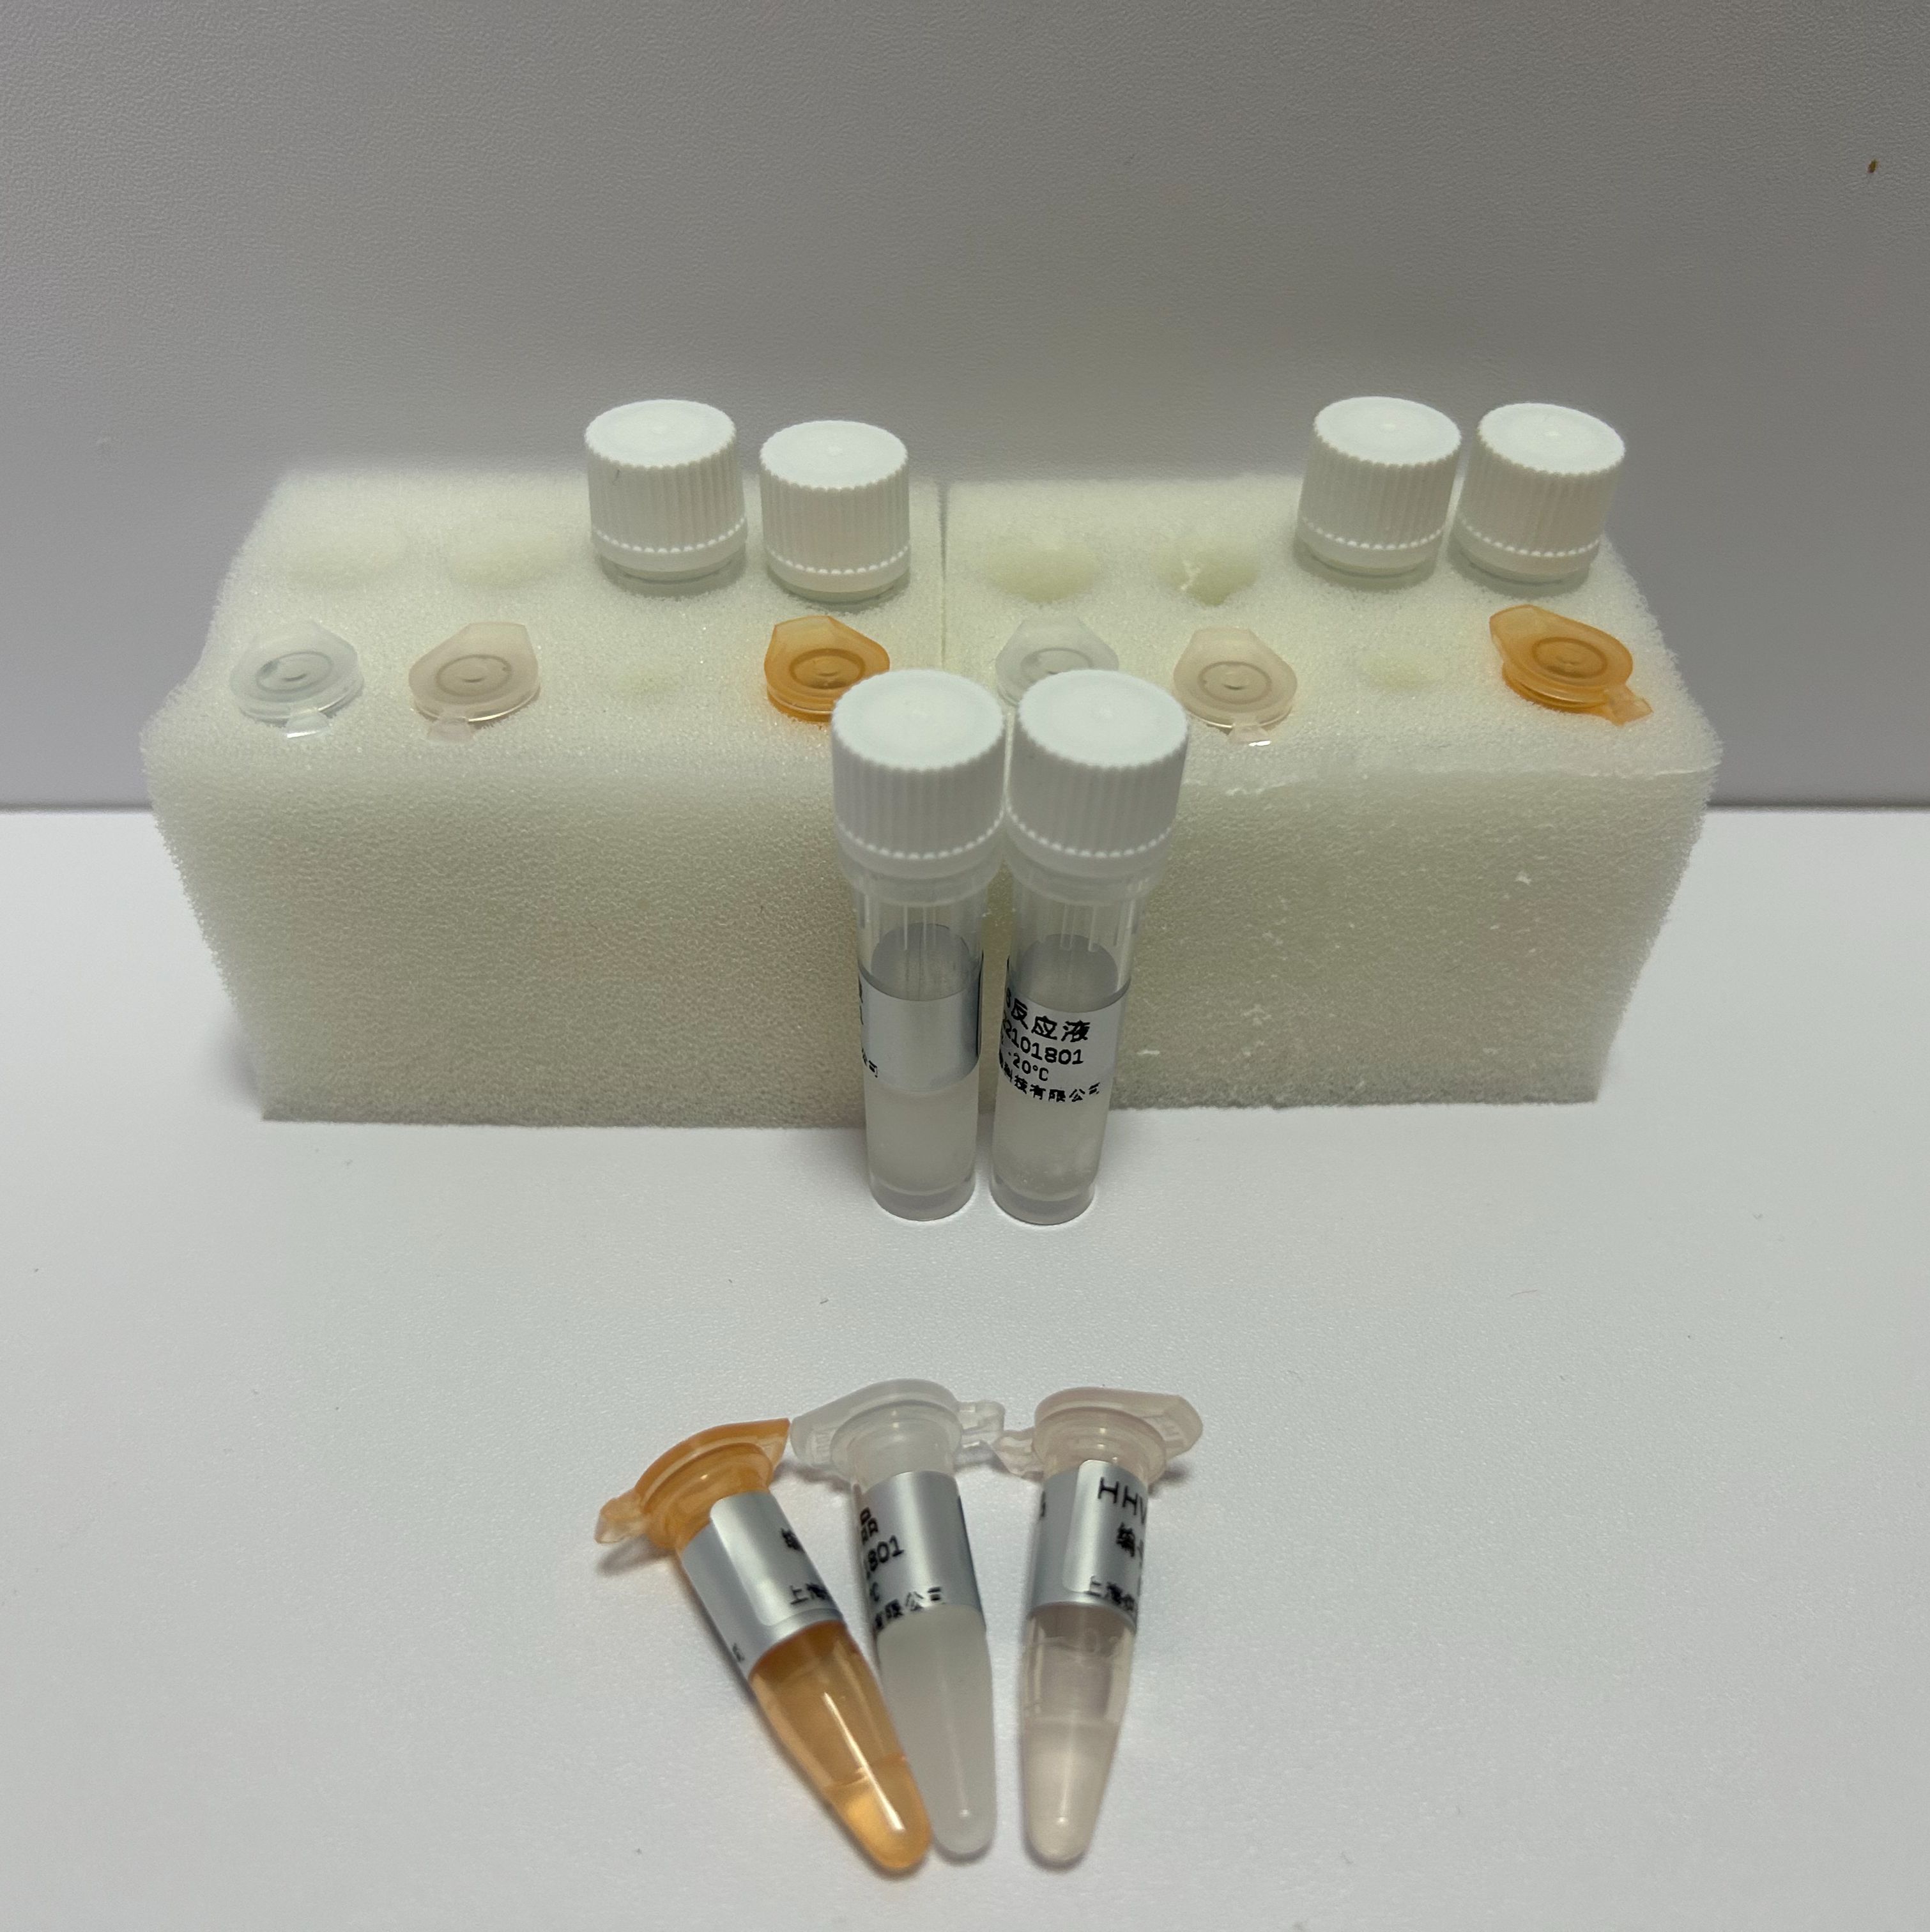 转基因品系马铃薯EH92-527-1探针法qPCR试剂盒